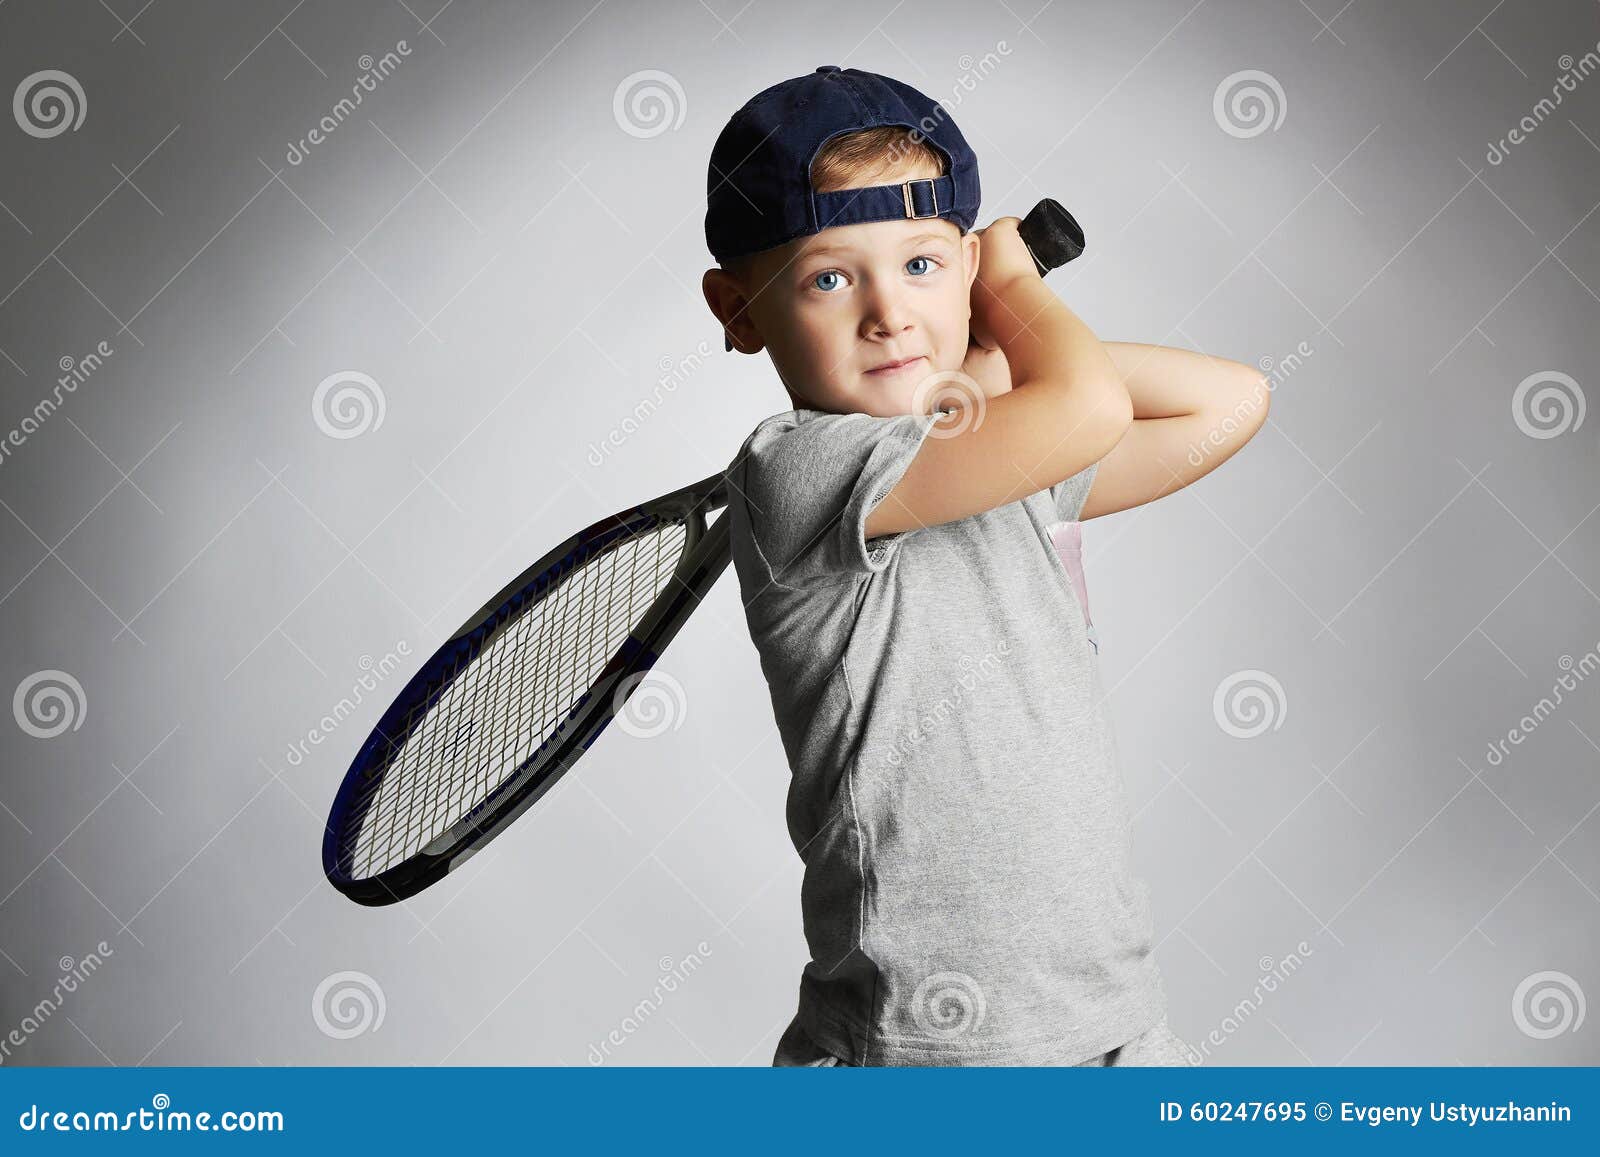 Petit Garçon Jouant Au Tennis Enfants De Sport Enfant Avec La Raquette De  Tennis Image stock - Image du homme, verticale: 60247695